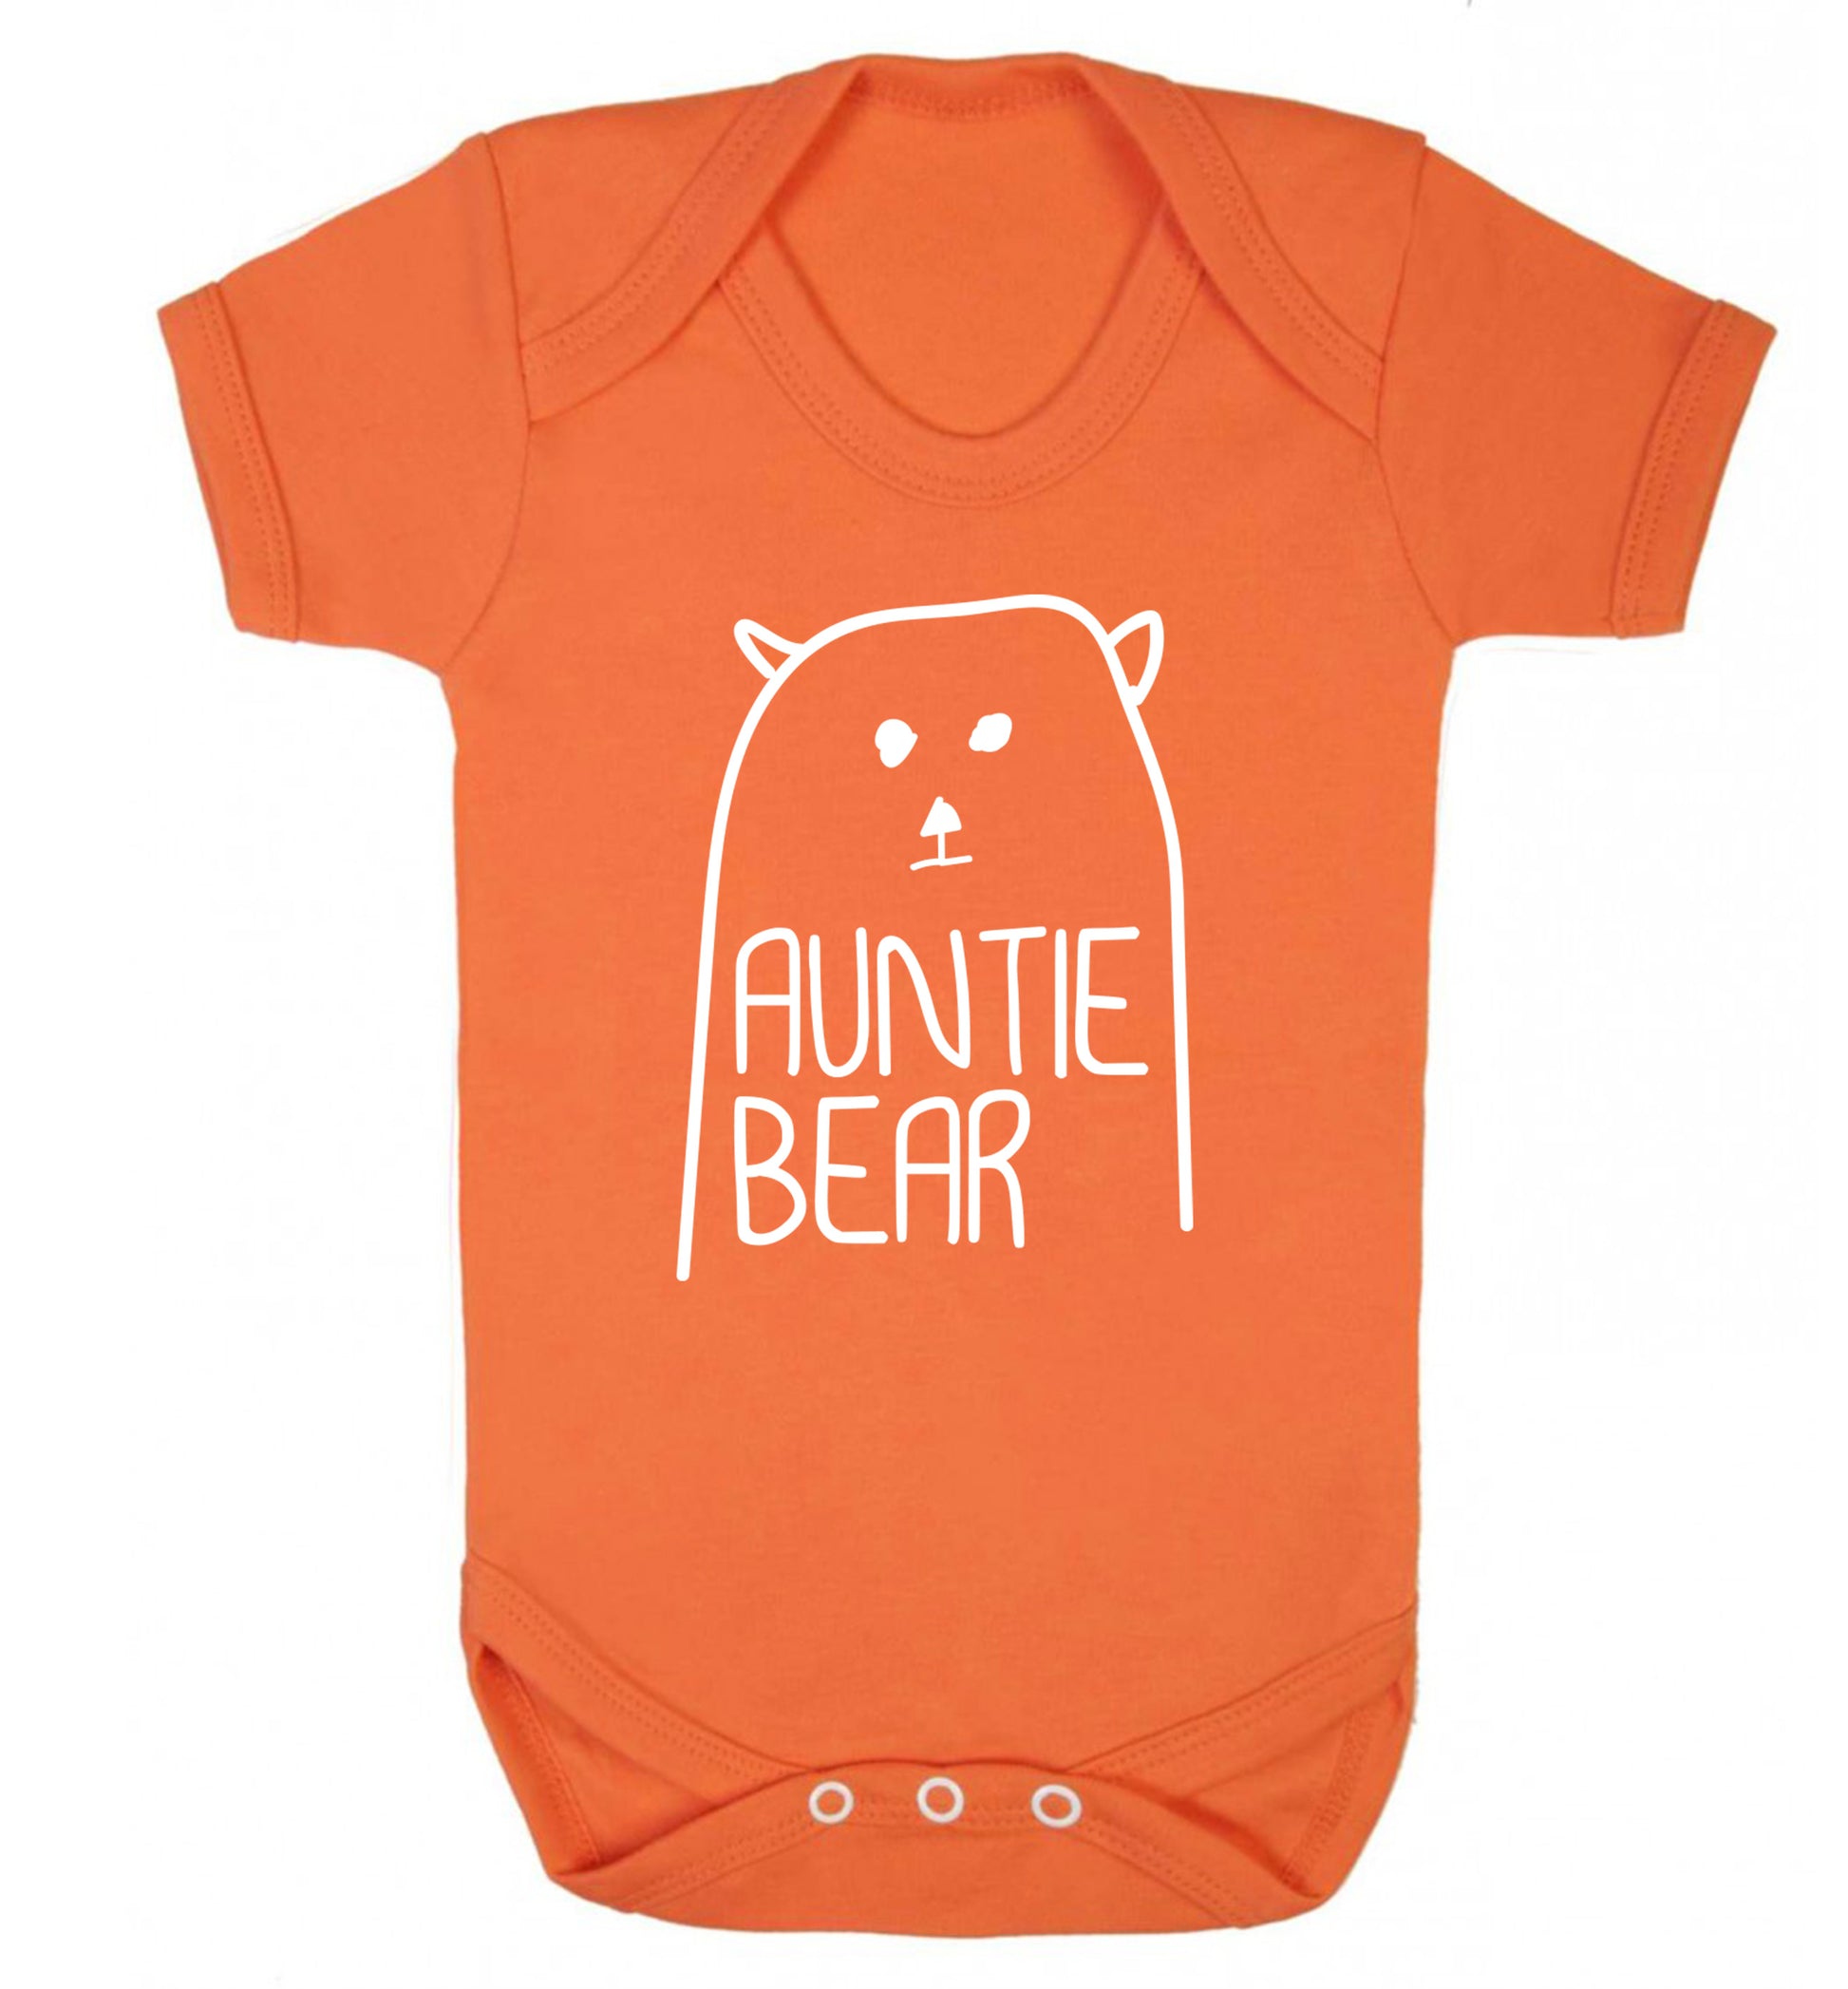 Auntie bear Baby Vest orange 18-24 months